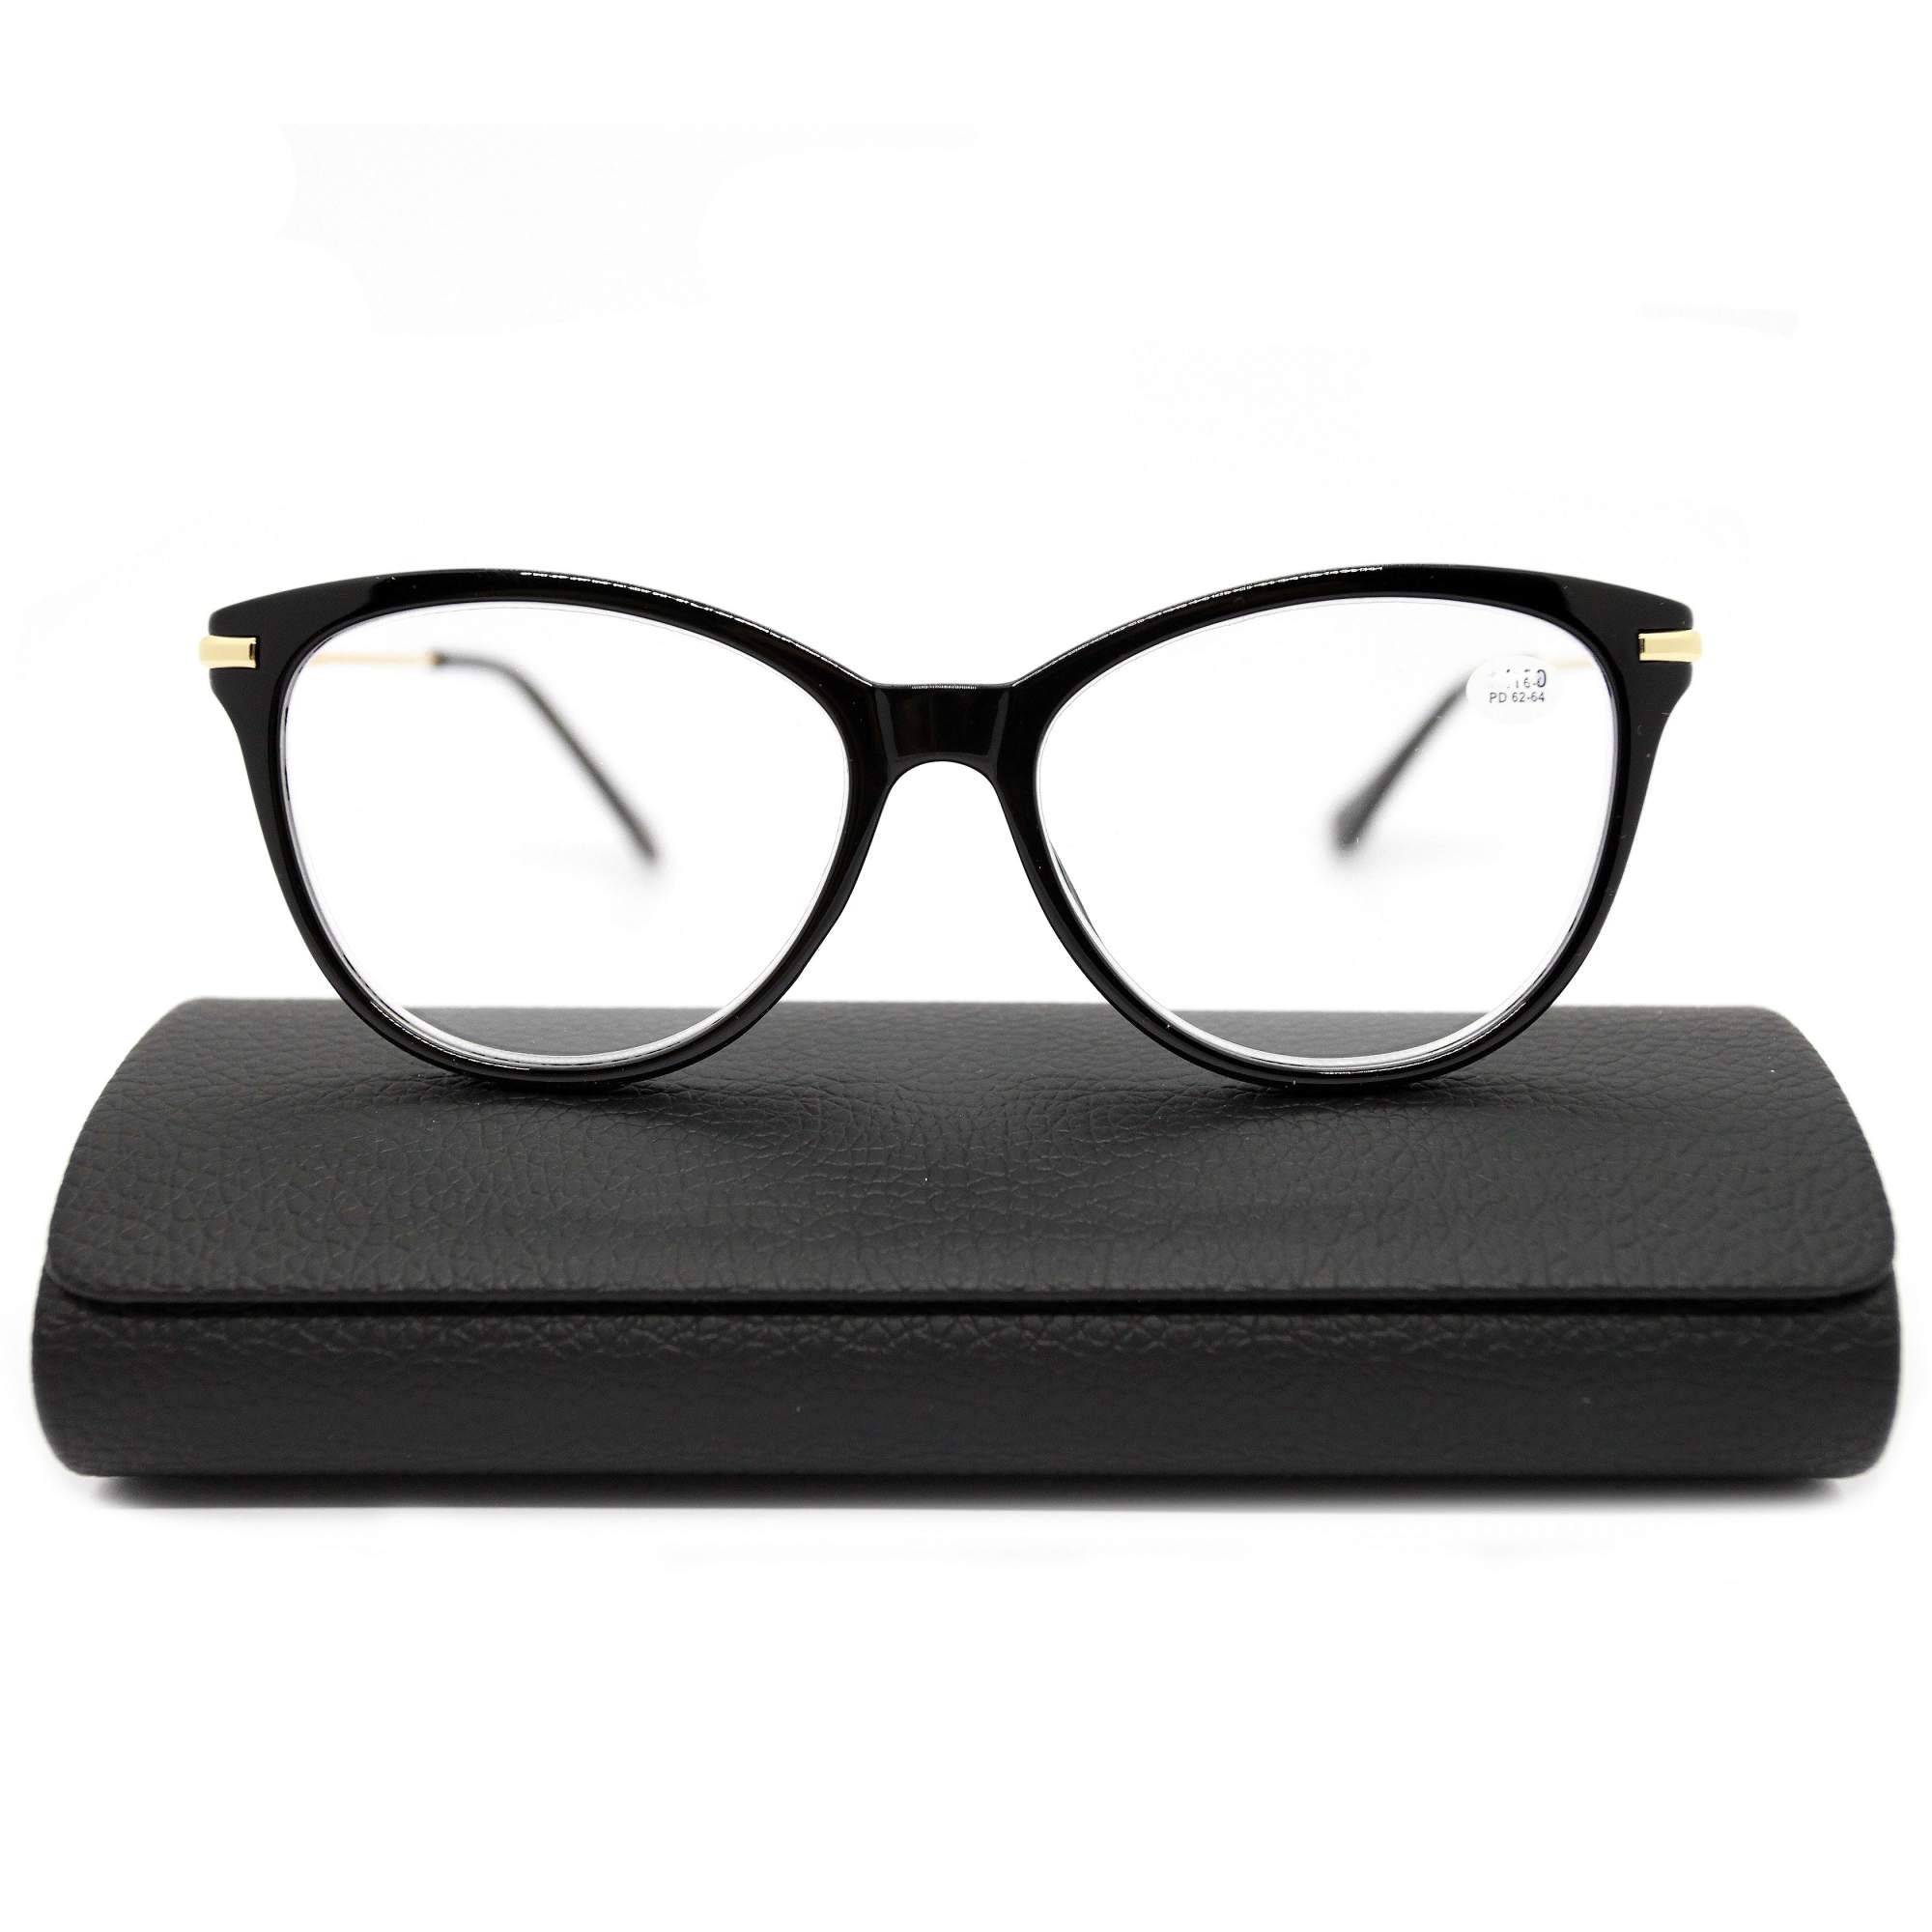 Готовые очки для зрения Fabia Monti 0202 -1,00, c футляром, цвет черный, РЦ 62-64